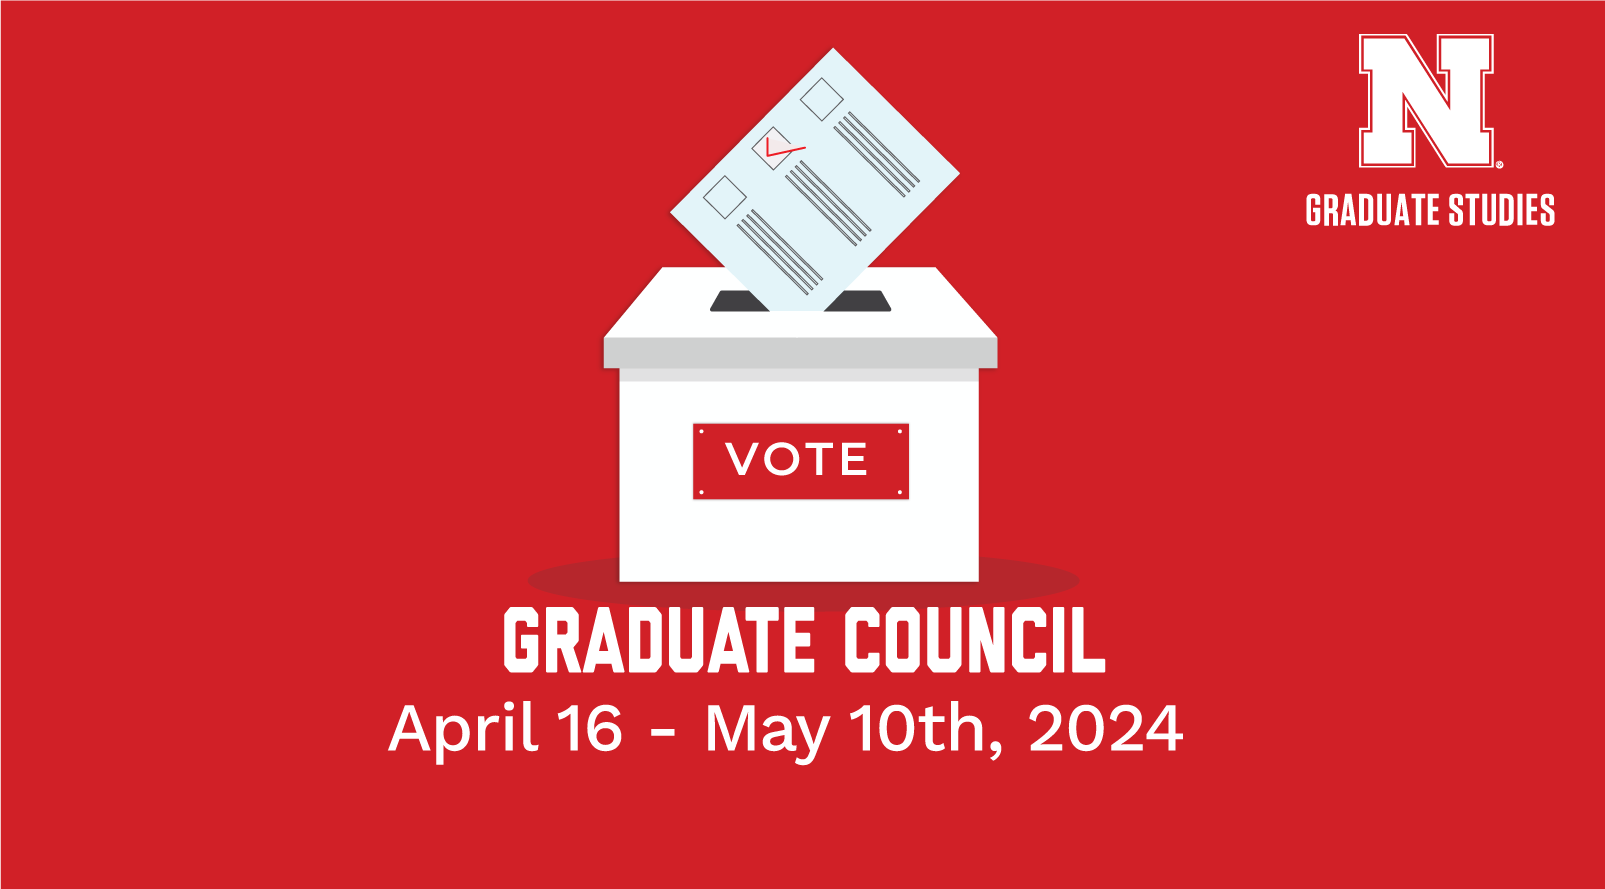 Graduate Council Voting